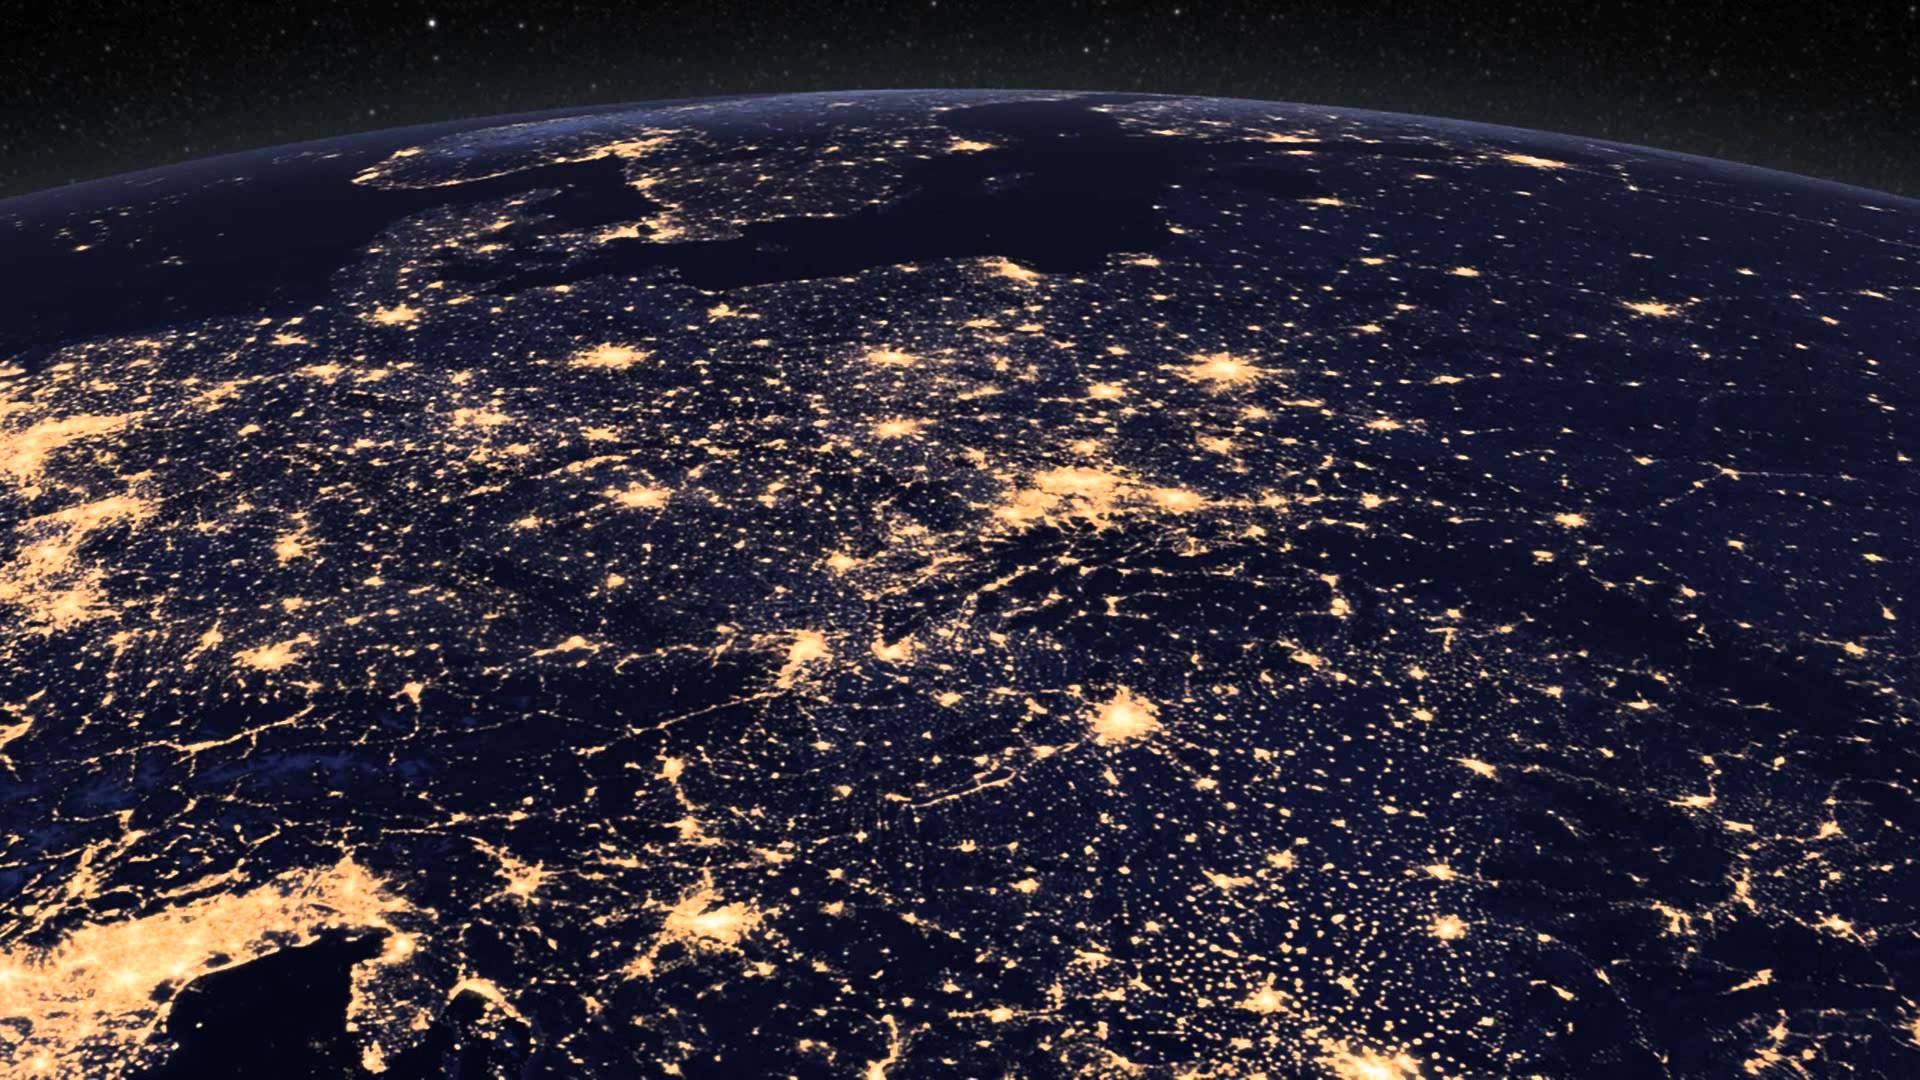 1920x1080 NASA Earth at Night Wallpapers Top Free NASA Earth at Night Backgrounds